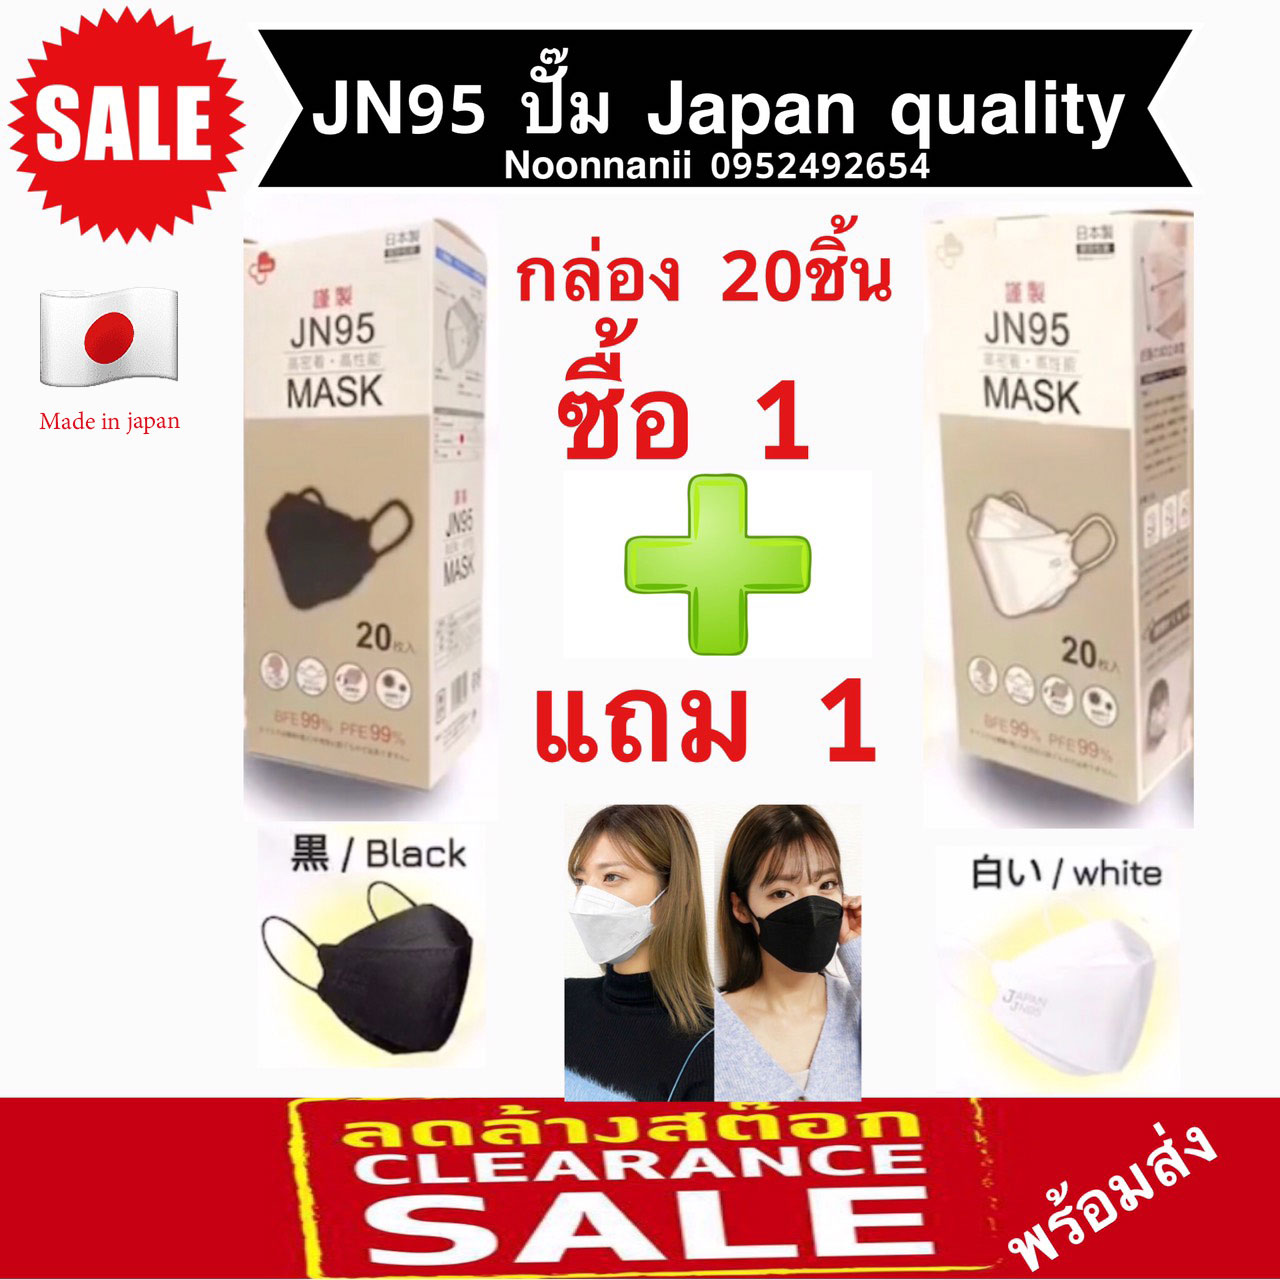 JN95 MASK กล่อง 20ชิ้น เซ็ทสุดคุ้ม ซื้อ 1 แถม 1 หน้ากากอนามัยทรง 3D มาตรฐานญี่ปุ่น มีทั้งสีขาว สีดำ ปั๊ม Japan ทุกชิ้น แท้ 100% สินค้าพร้อมส่งจากไทย